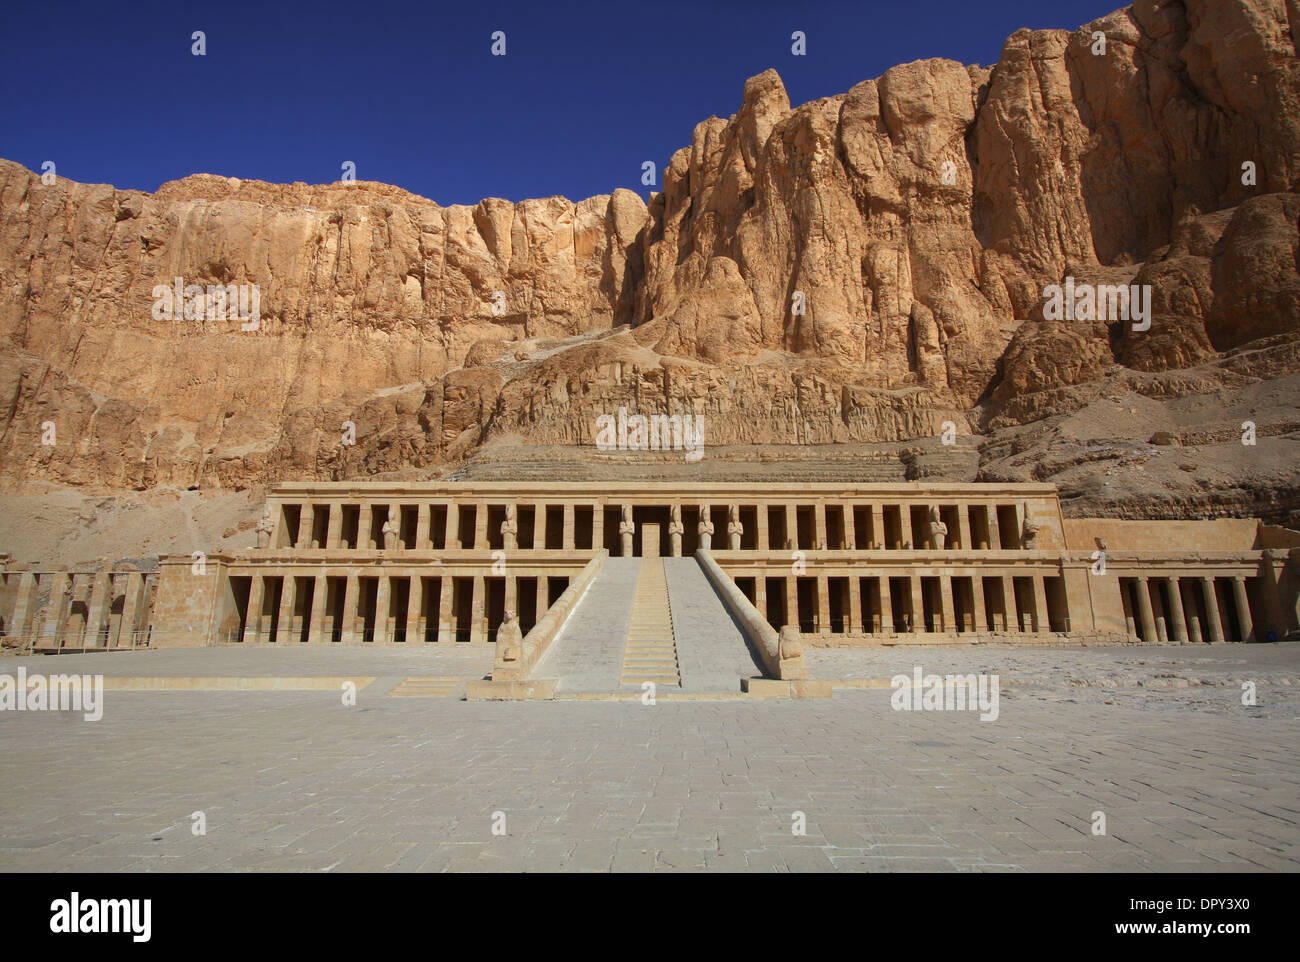 Le temple d'Hatshepsout dans la Vallée des Rois près de Louxor en Égypte Banque D'Images